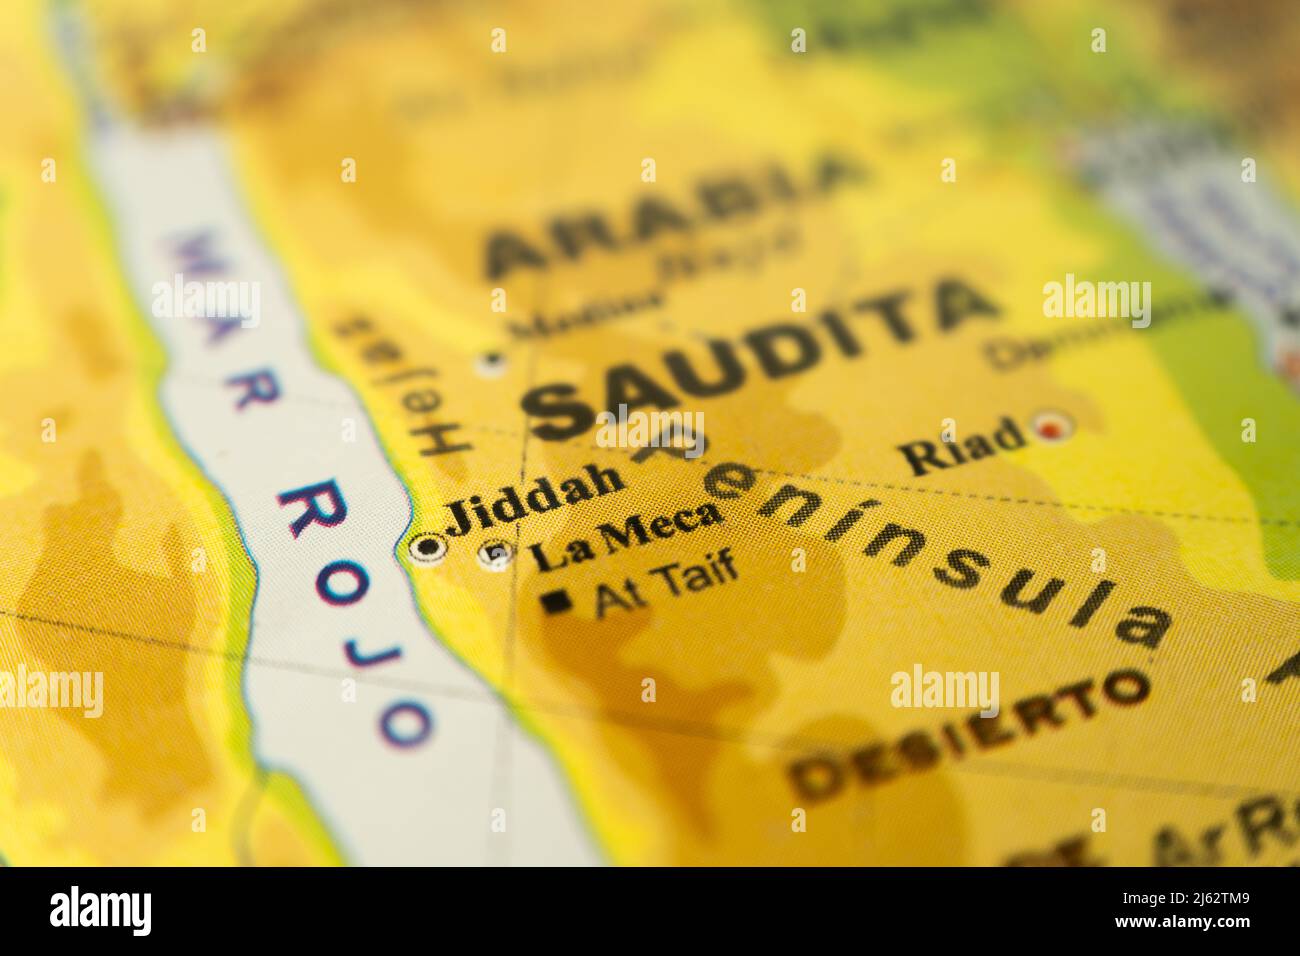 Gros plan de la carte orographique de l'Arabie saoudite de l'est, de la Mecque et de Jiddah, avec références en espagnol. Concept de cartographie, Voyage, géographie. Différence Banque D'Images